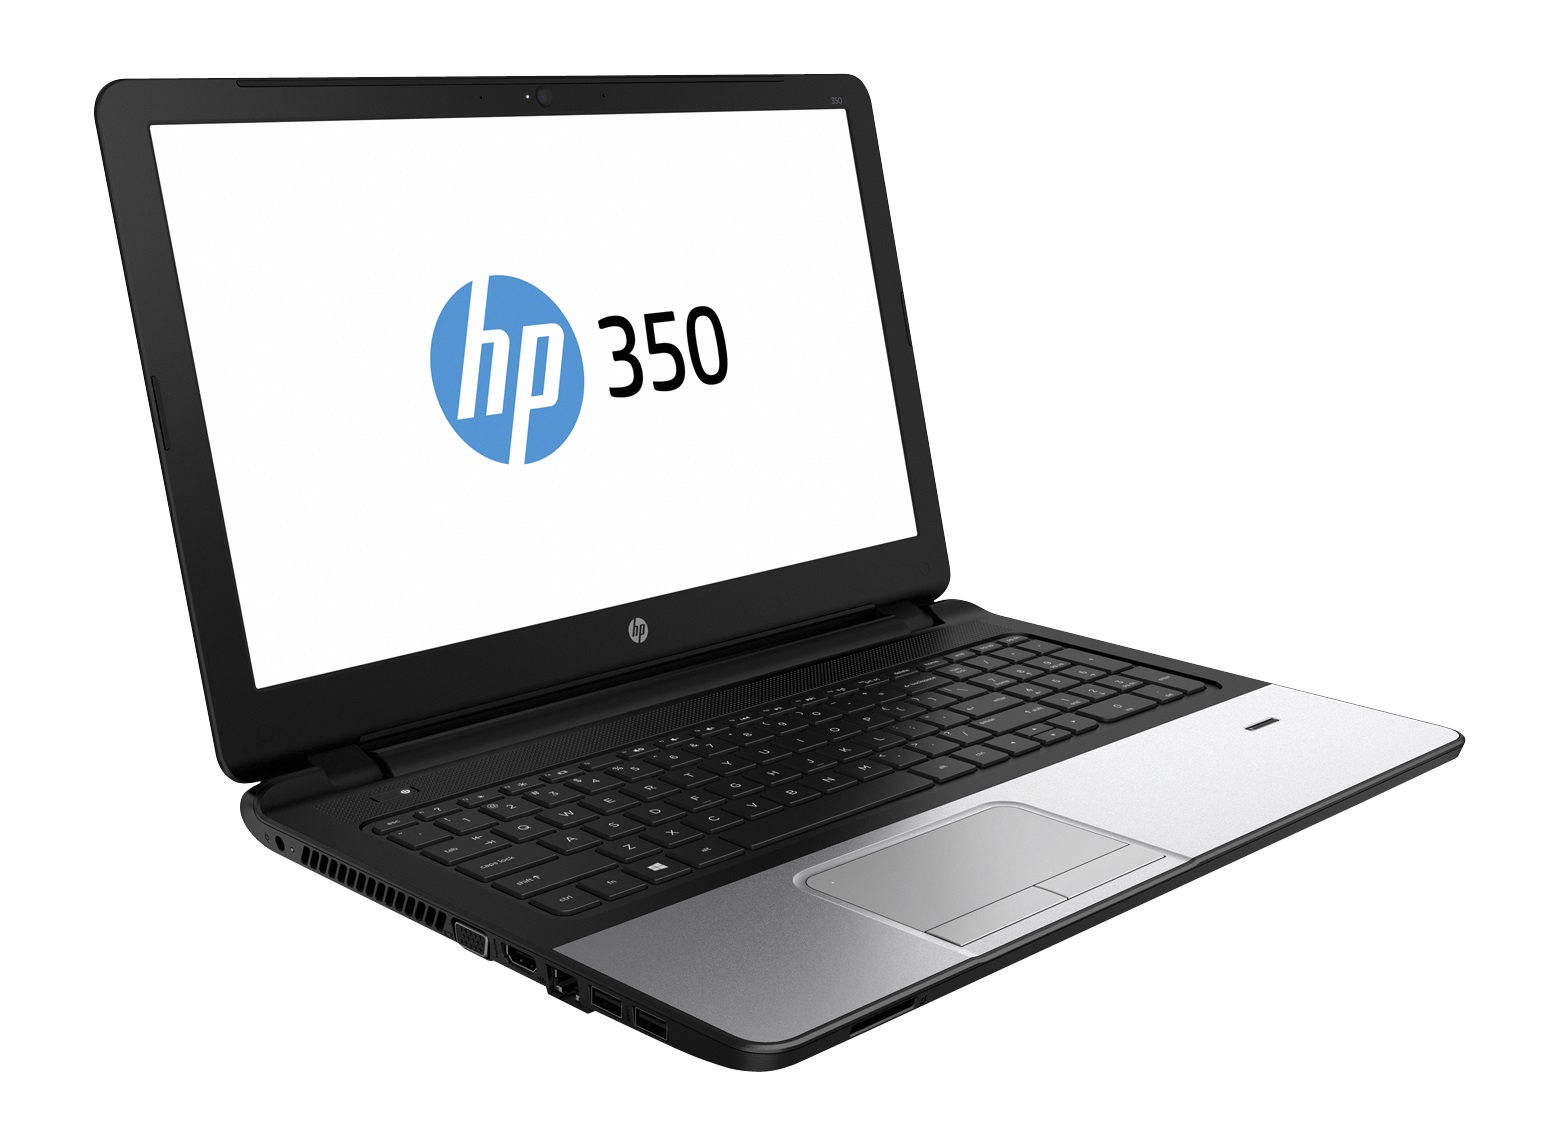 HP 350